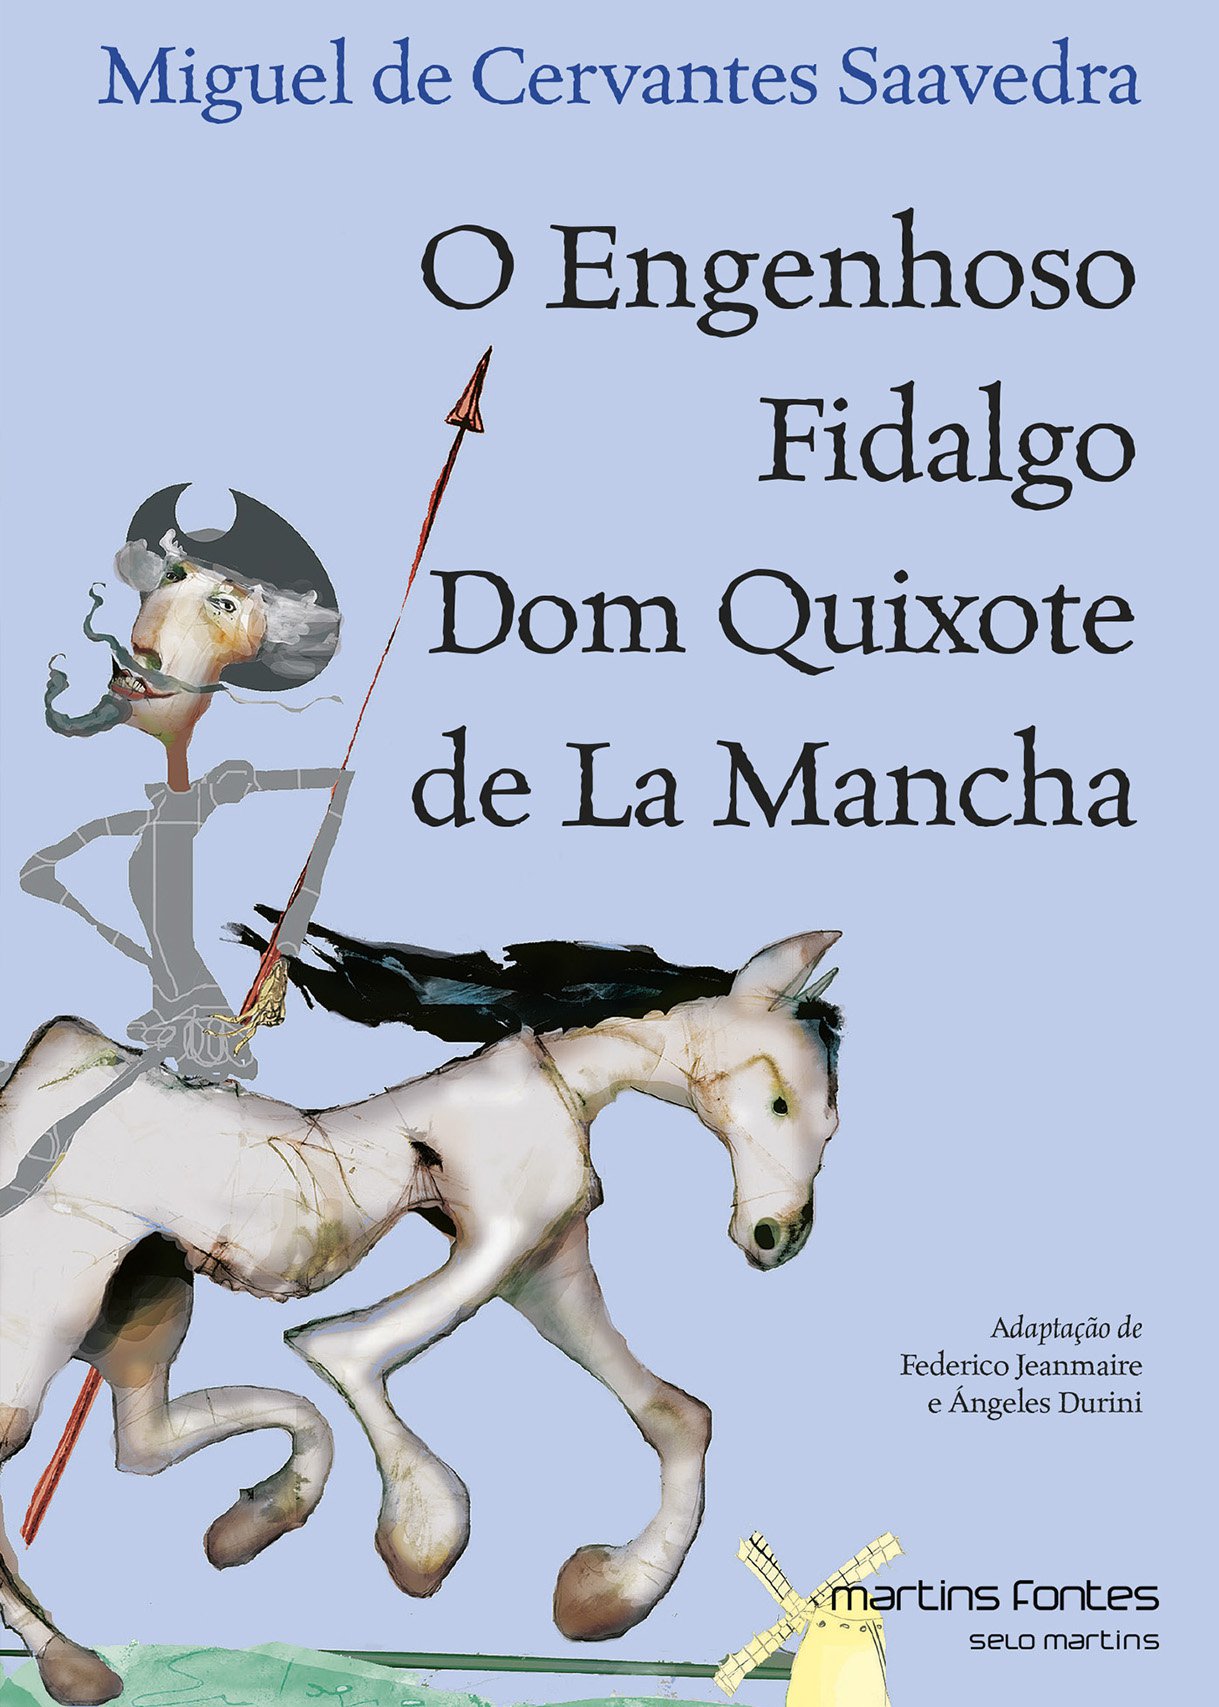 Engenhoso fidalgo Dom Quixote de la mancha, O